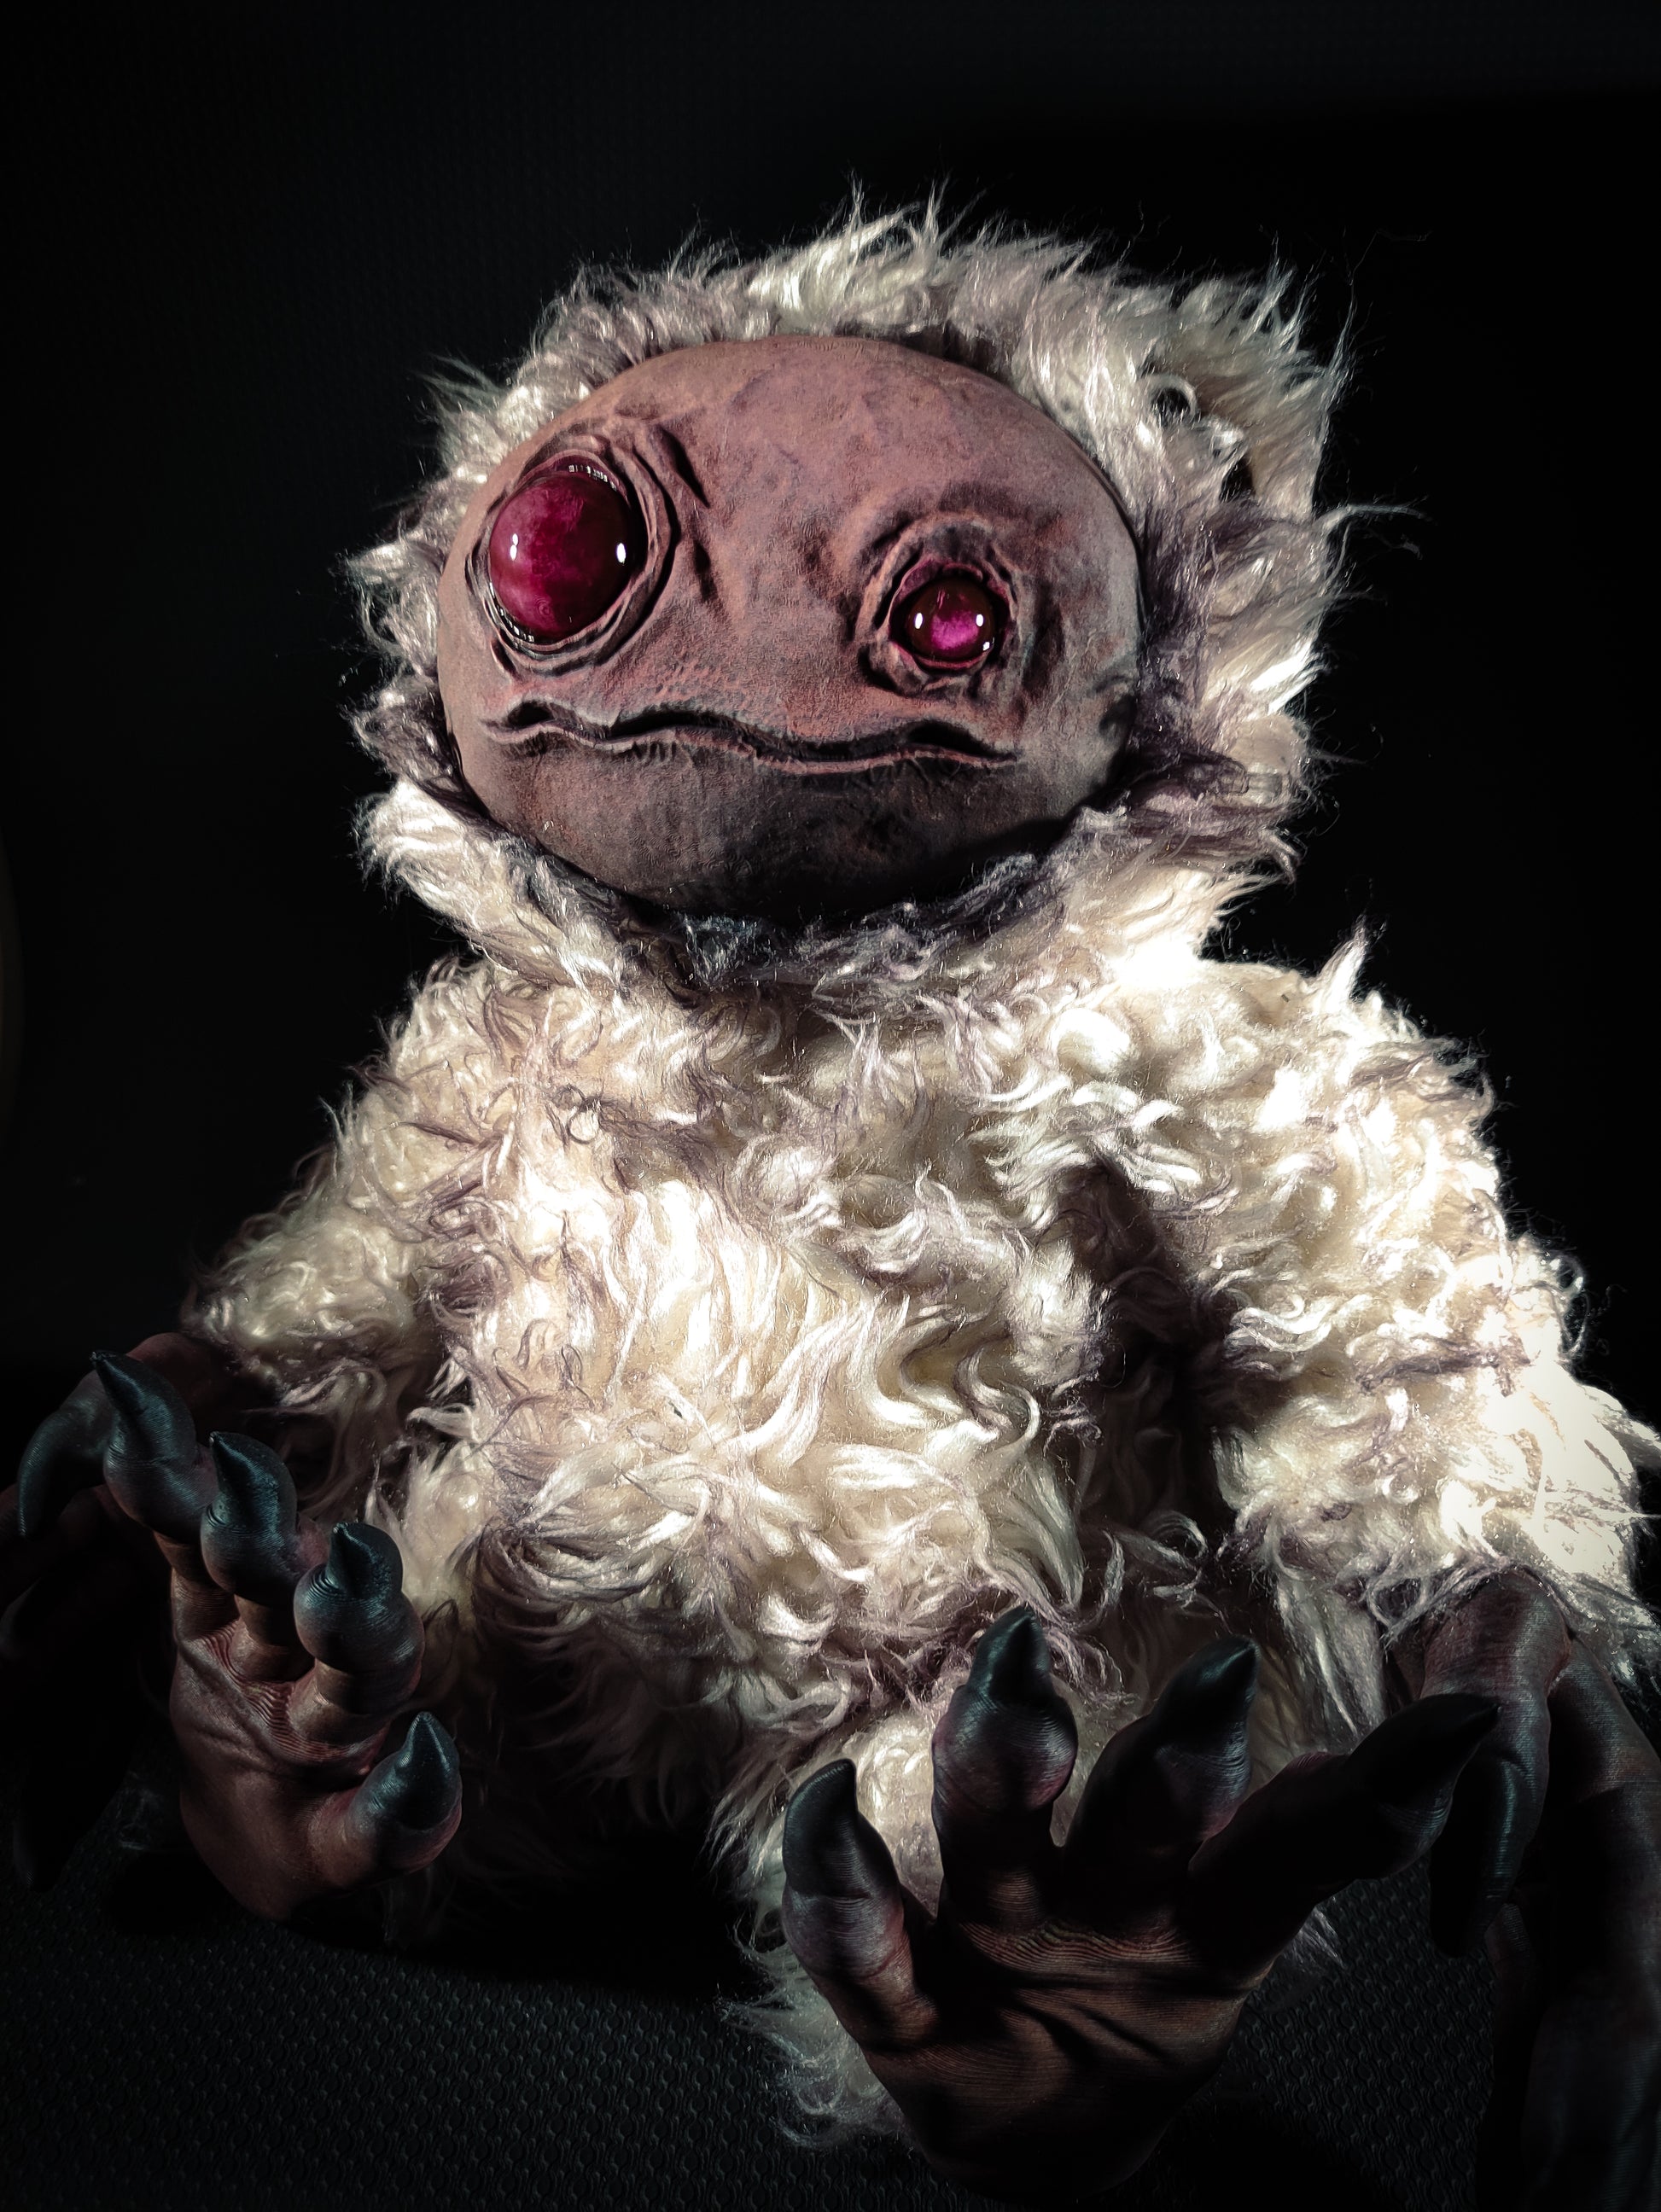 ZIPPO: Albino Dream Ver. - Monster Art Doll Plush Toy